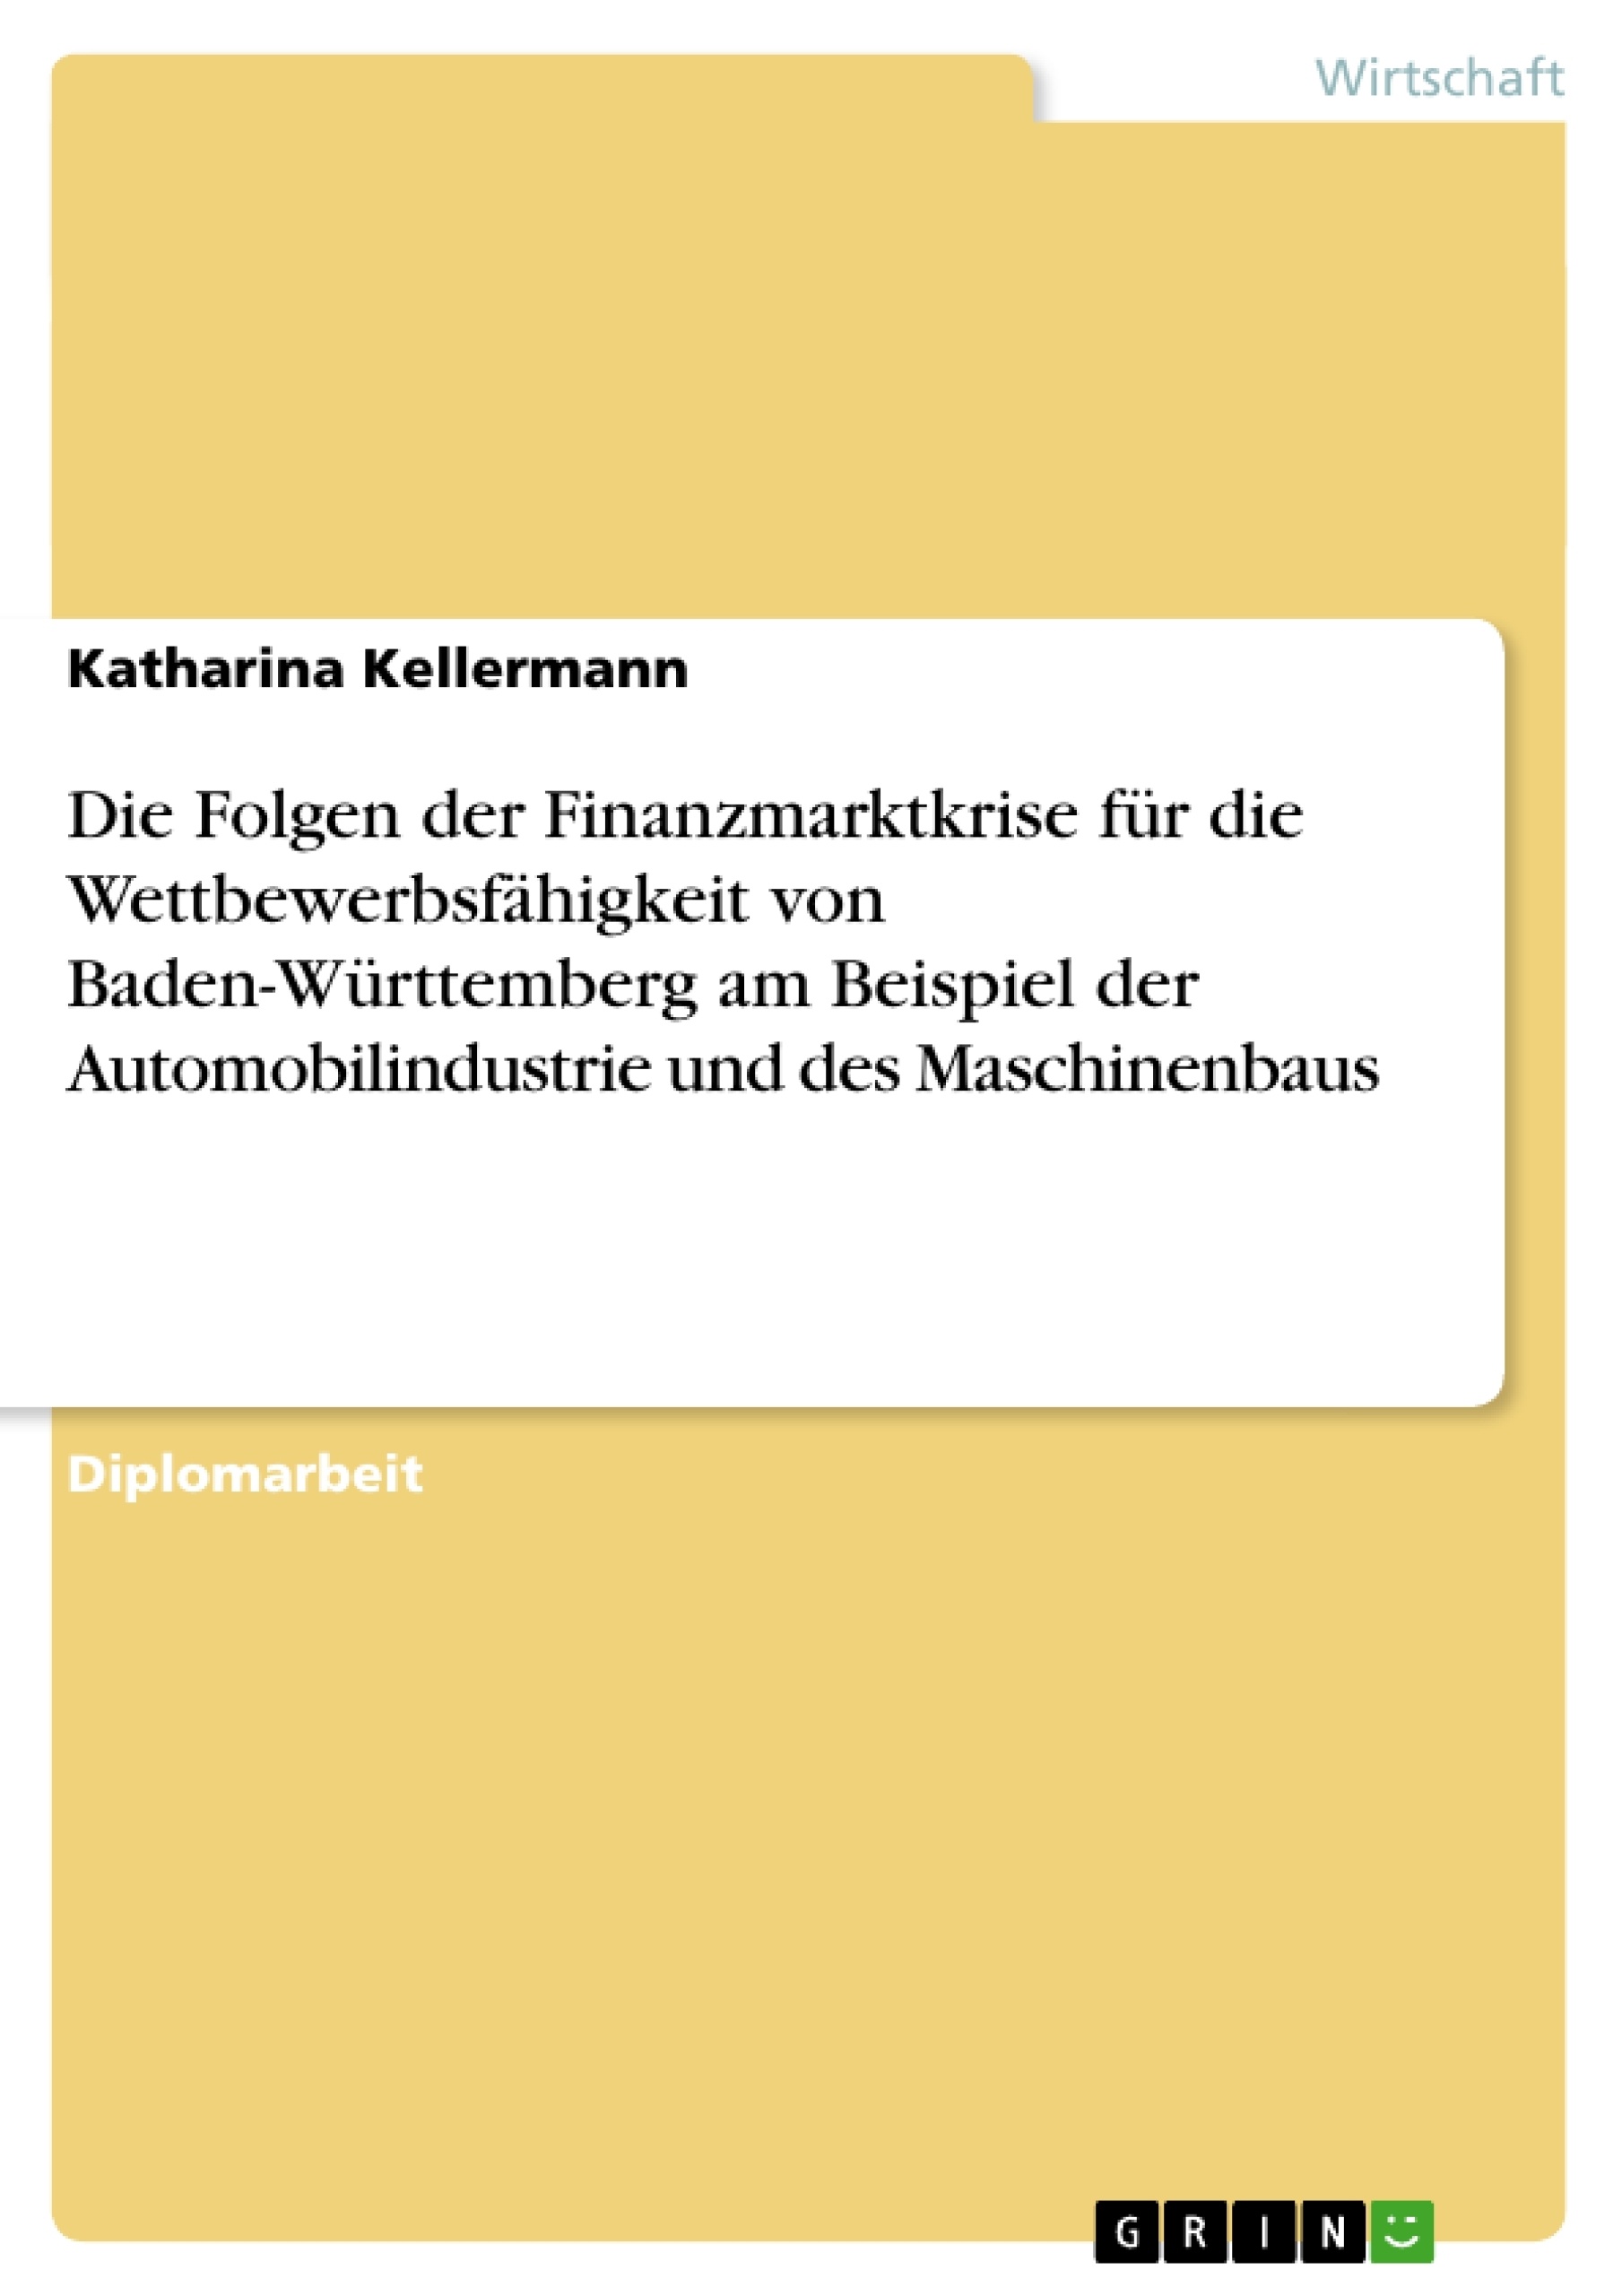 Title: Die Folgen der Finanzmarktkrise für die Wettbewerbsfähigkeit von Baden-Württemberg am Beispiel der Automobilindustrie und des Maschinenbaus